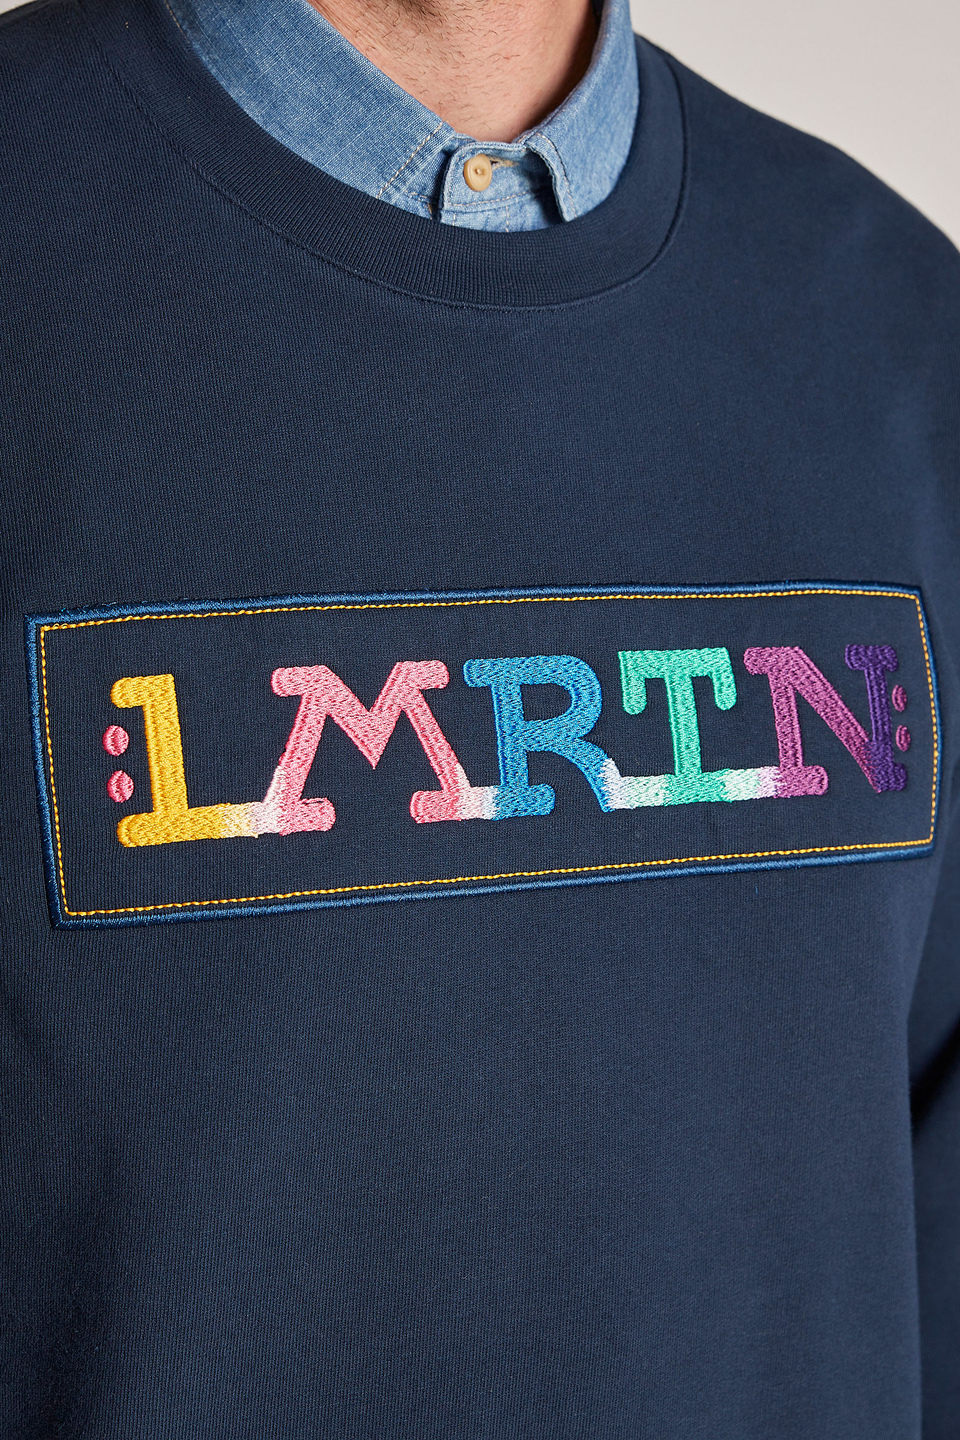 Sweat-shirt homme 100% coton, à encolure ronde et coupe oversize - La Martina - Official Online Shop